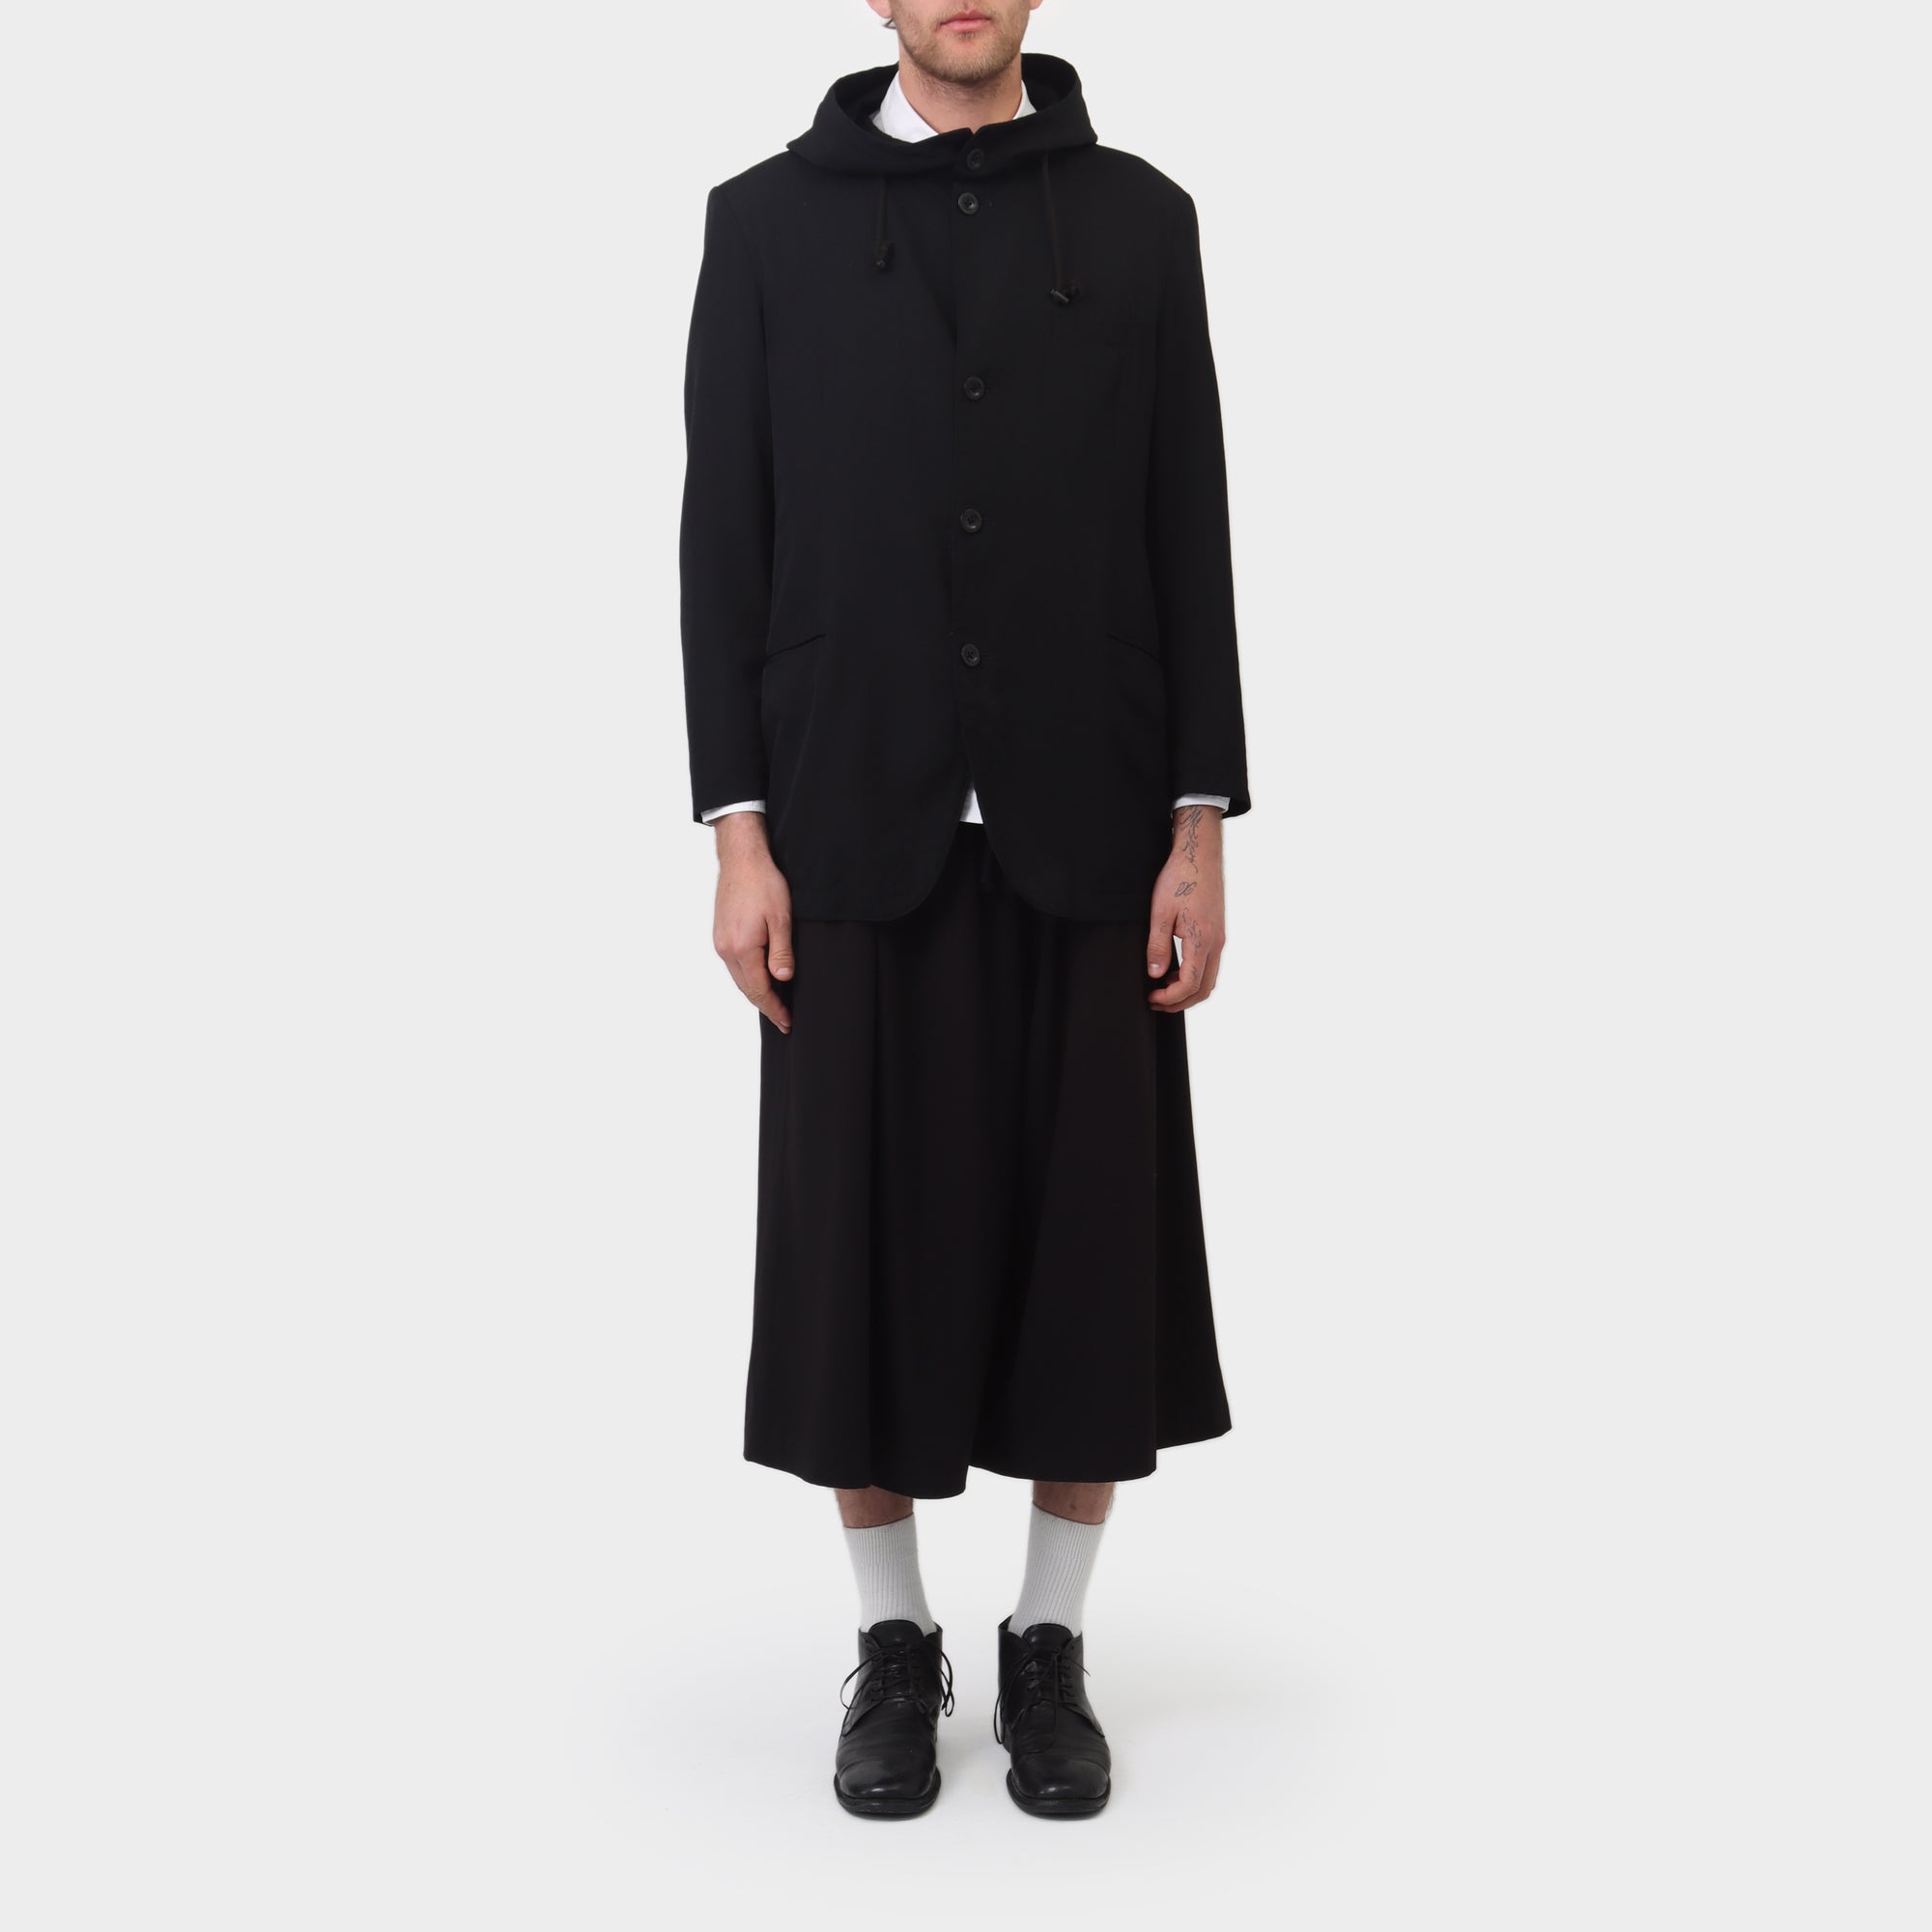 Y's Yohji Yamamoto Hooded Cotton / Wool Coat